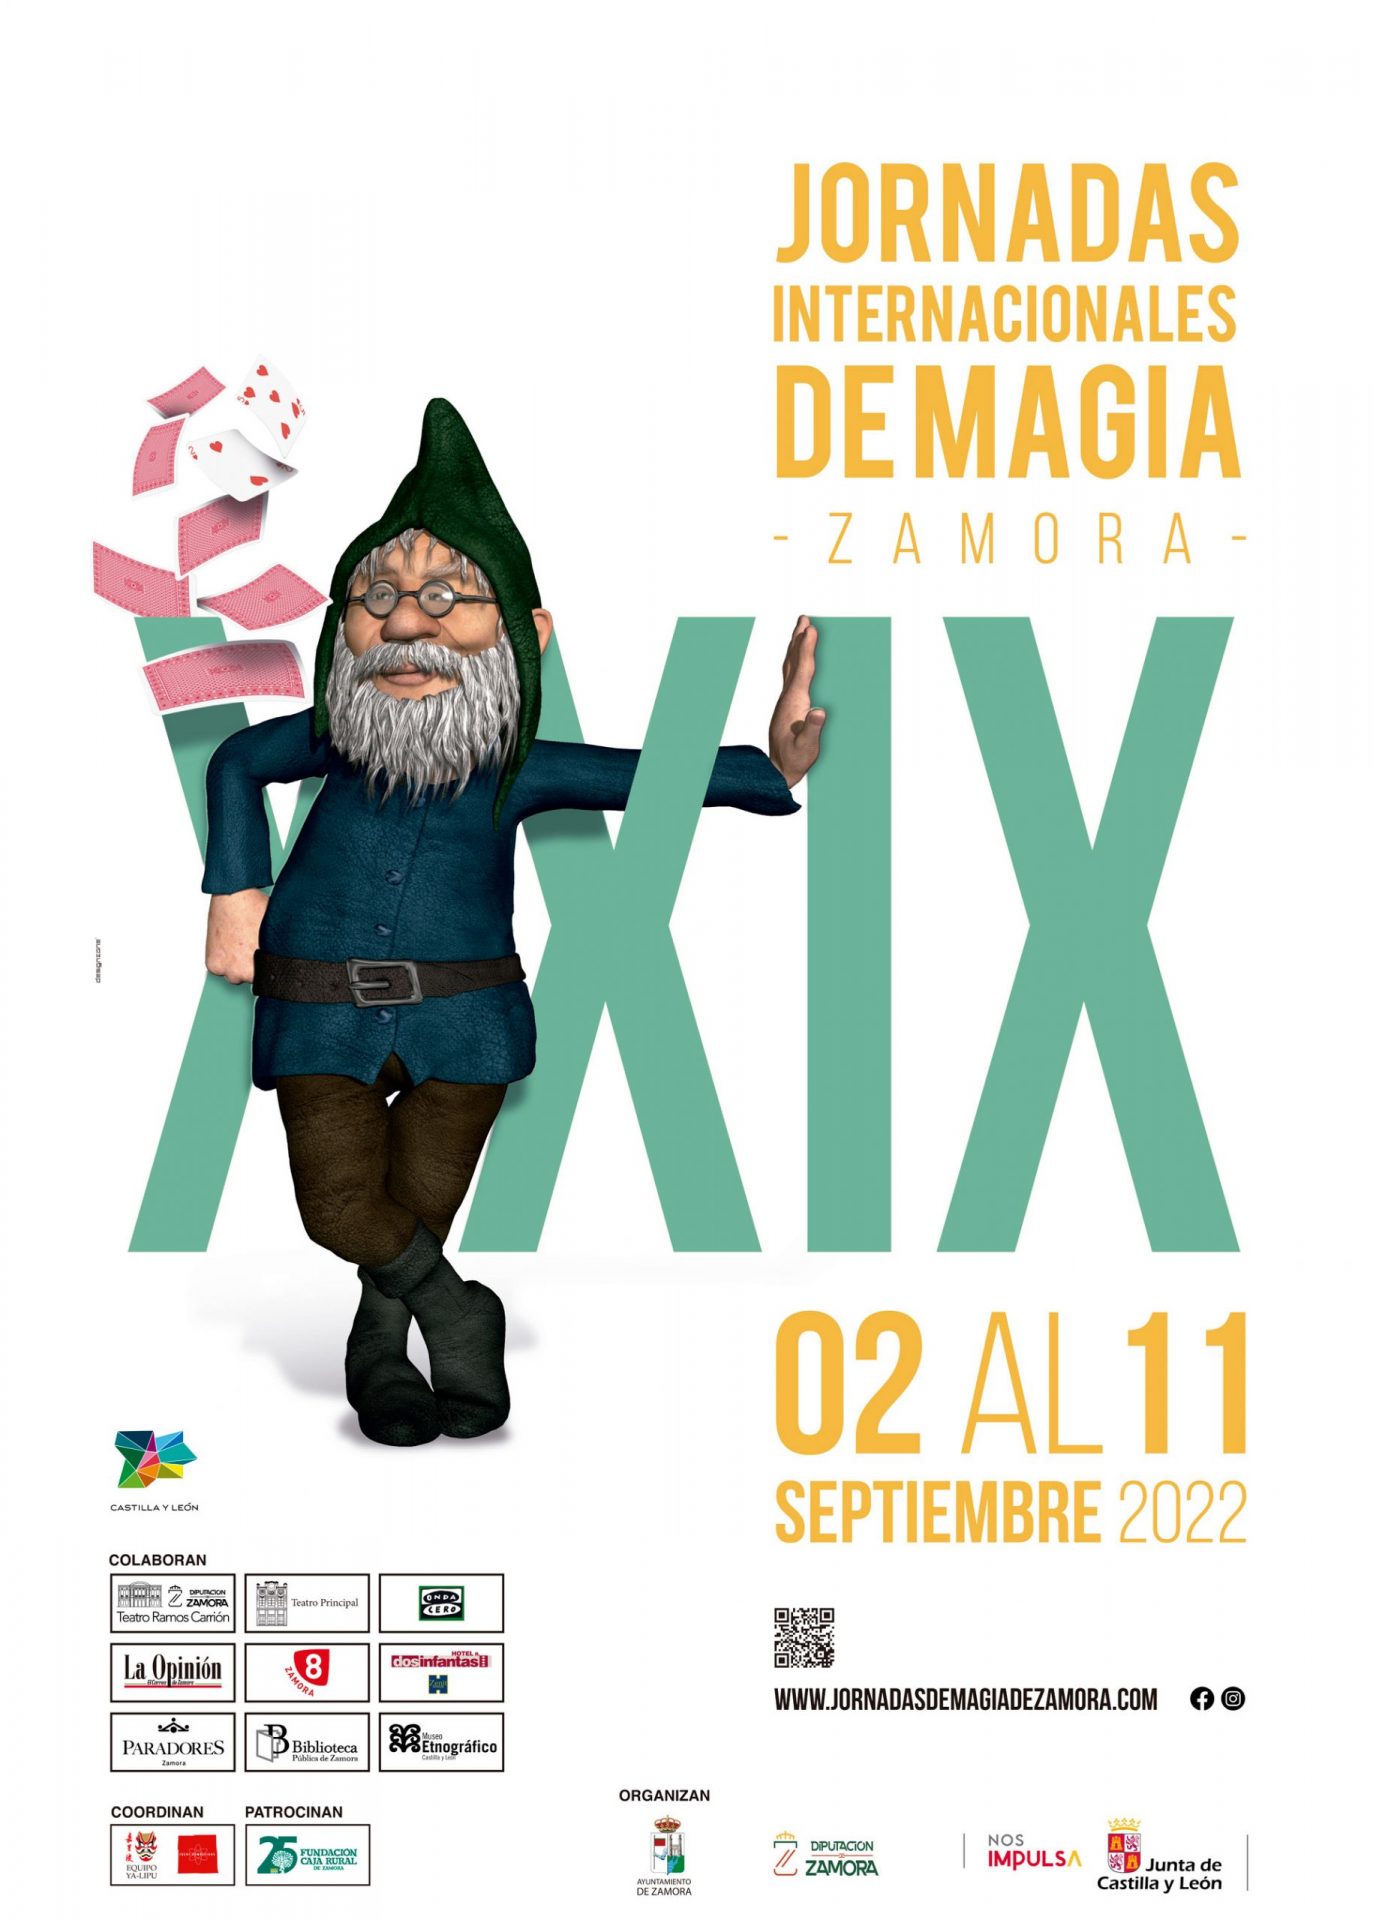 Jornadas internacionales de magia ciudad de Zamora